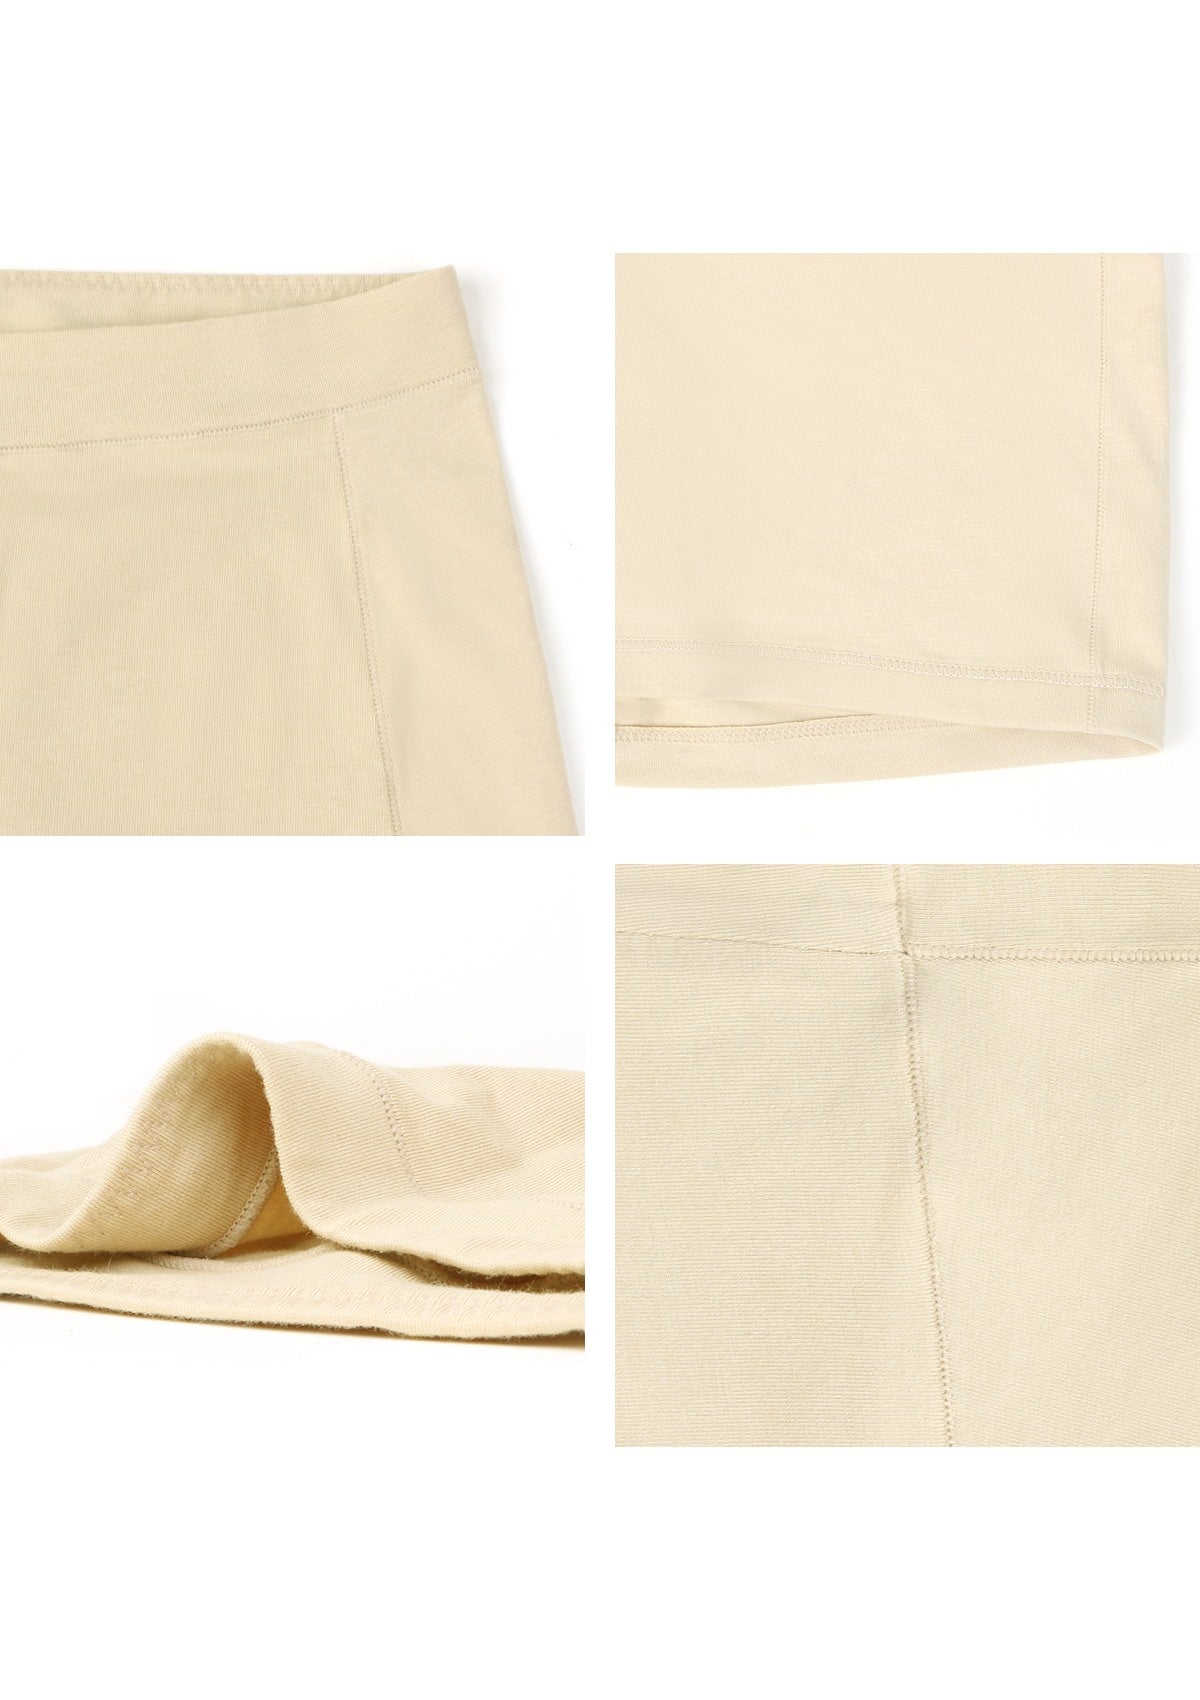 All-Day Comfort High-Rise Cotton Boyshorts Underwear 3 Pack - M / Black+White+Beige